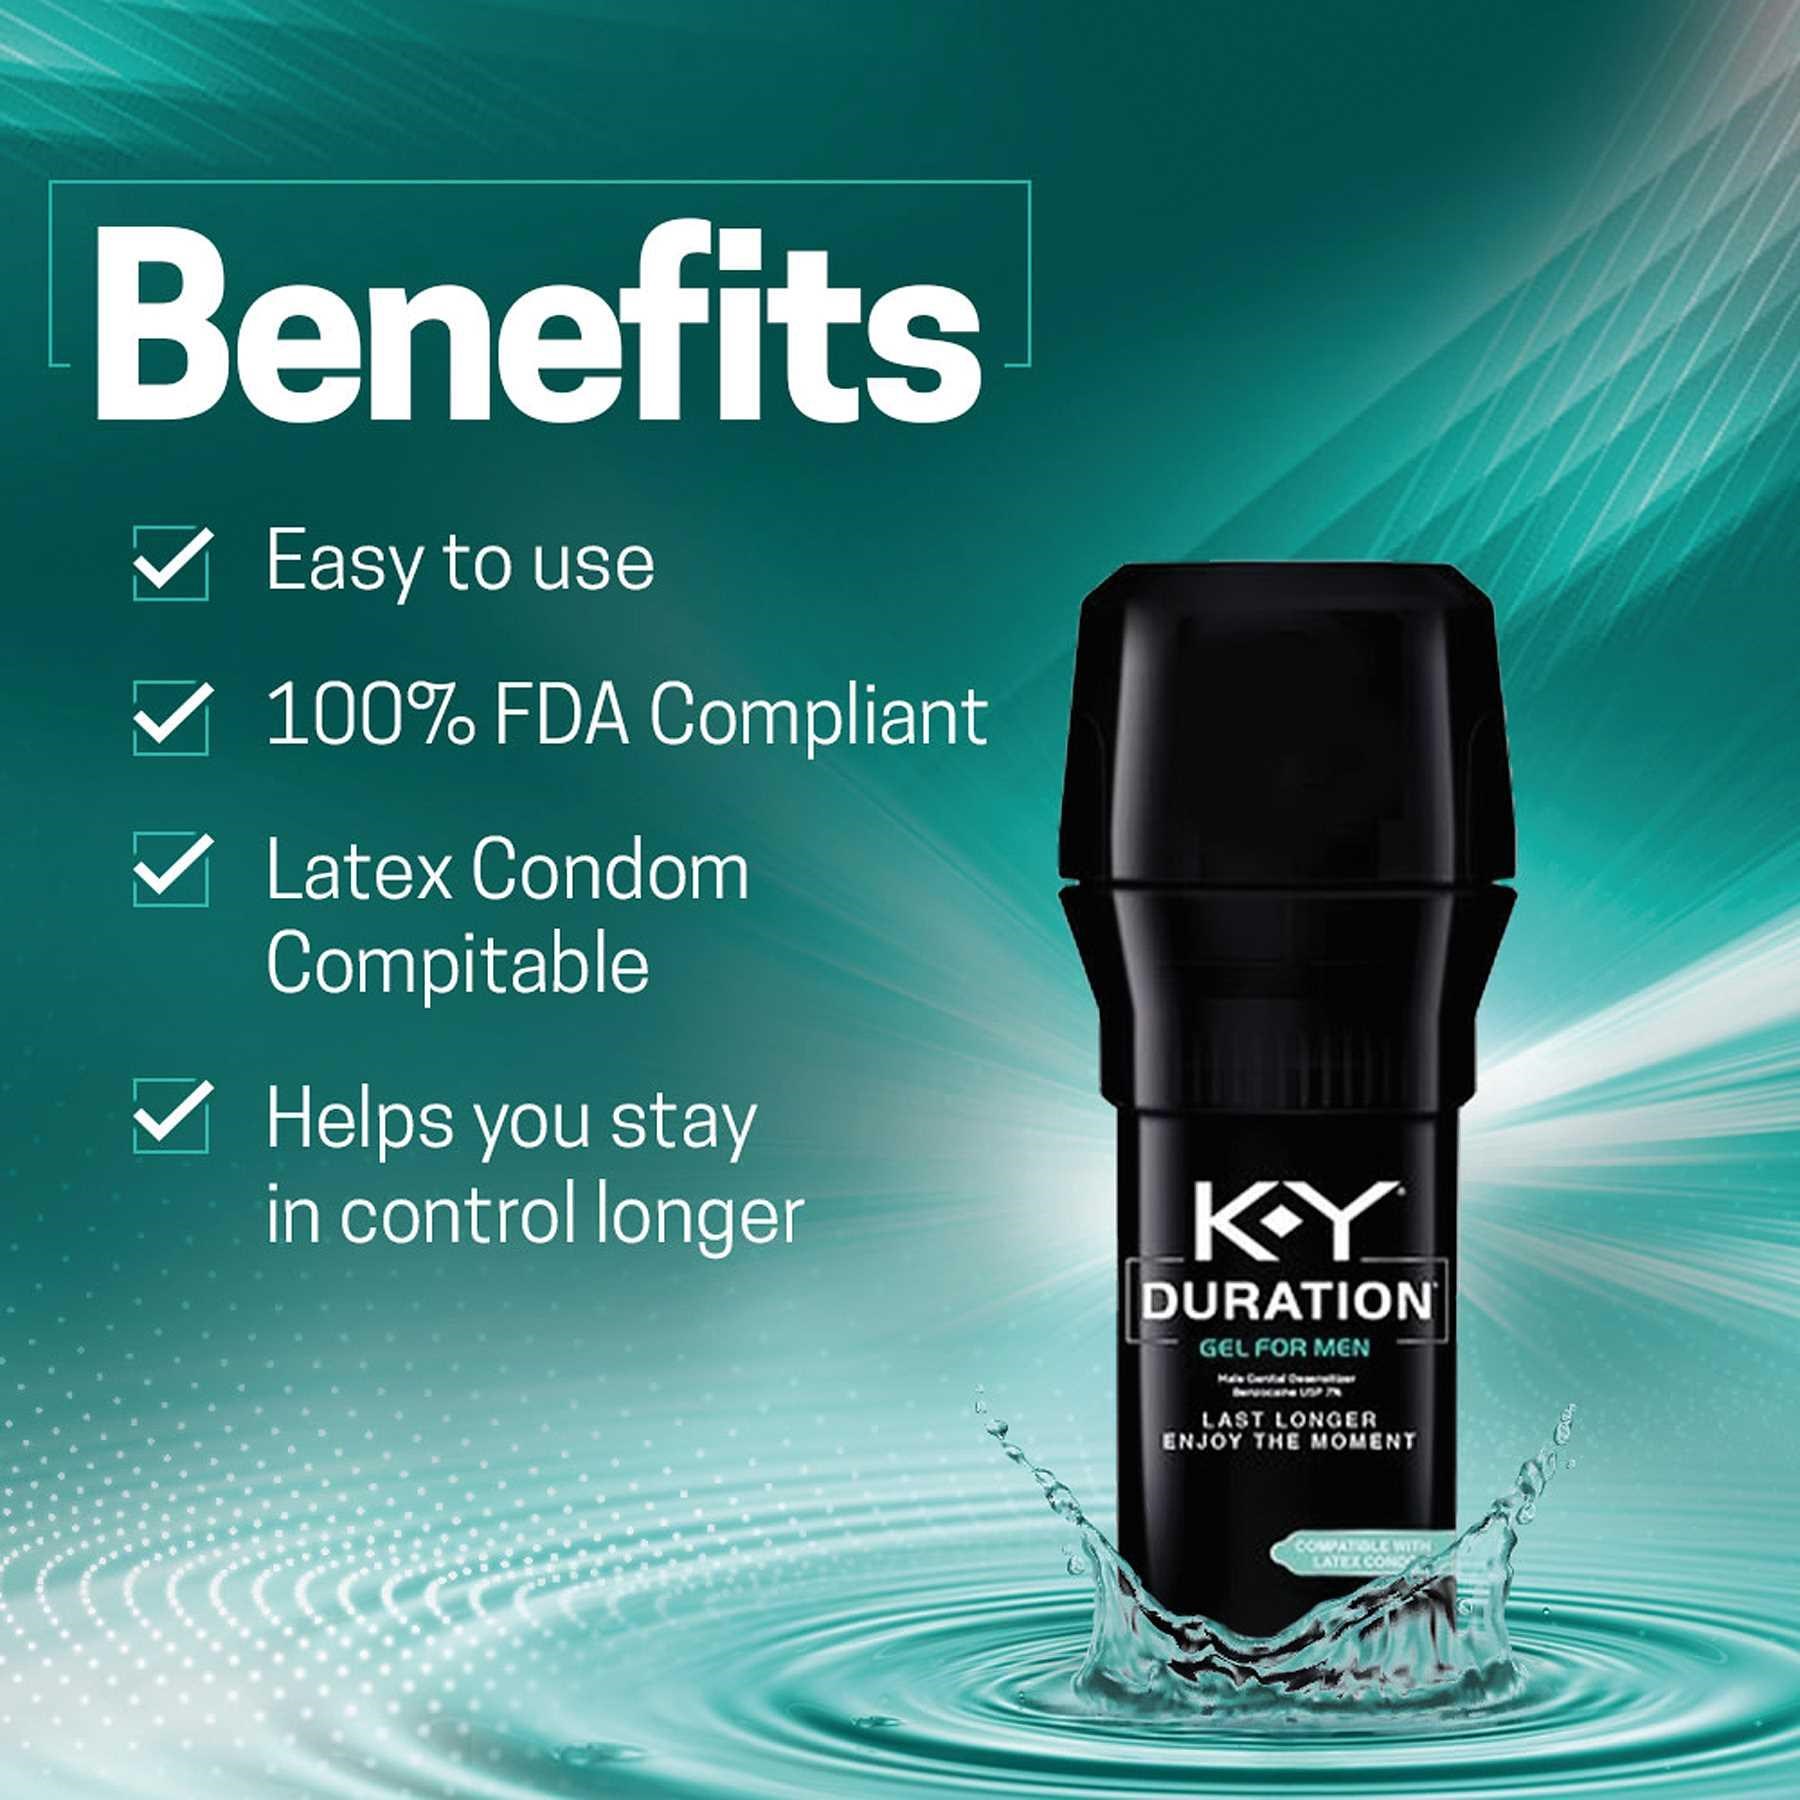 K-Y Duration Male Desensitizer Gel Pump benefits